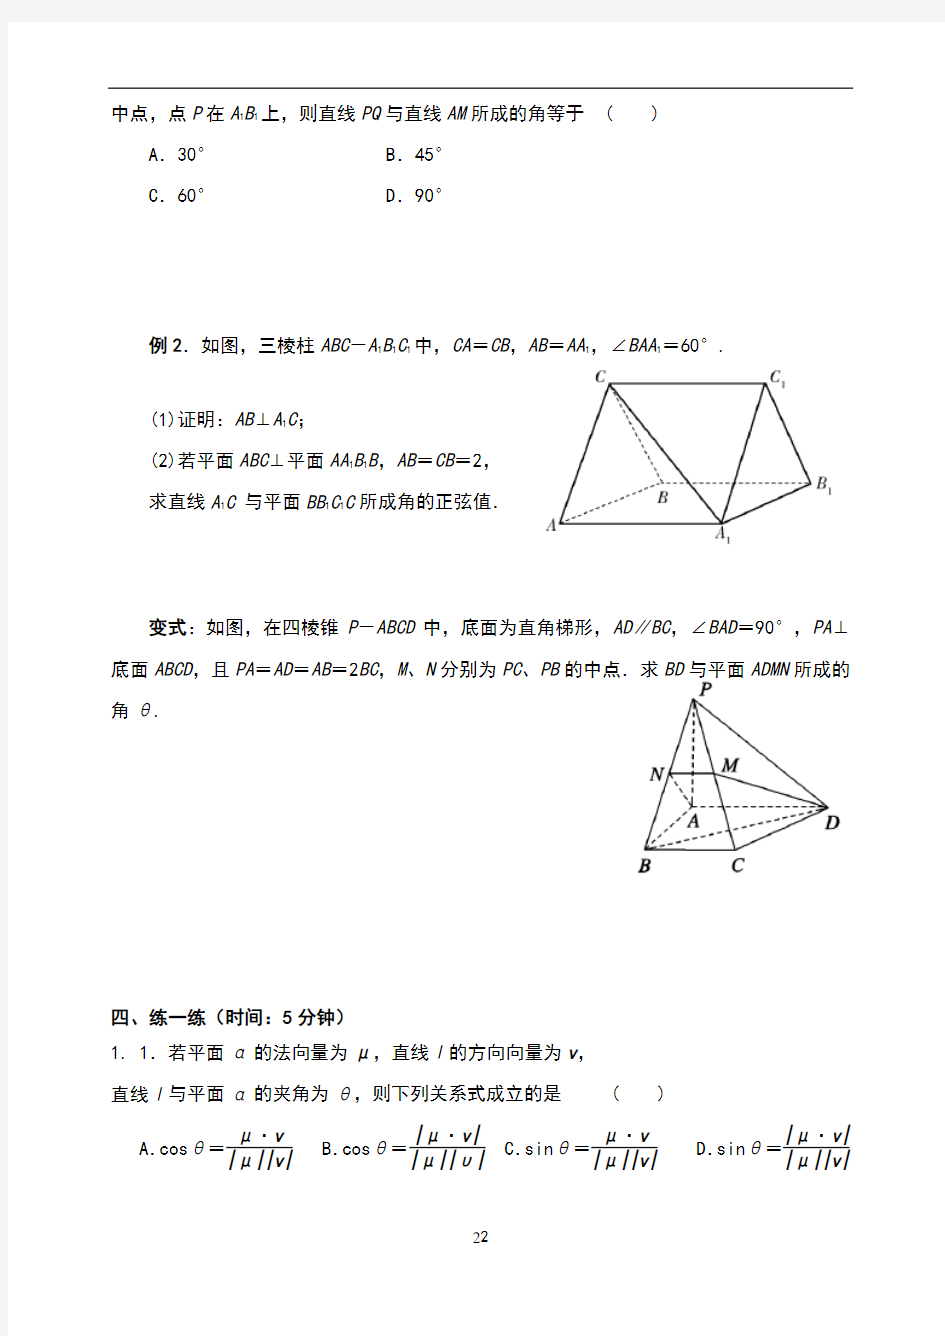 §3.2.2立体几何中的向量方法(4)及详解——向量法求线线角与线面角